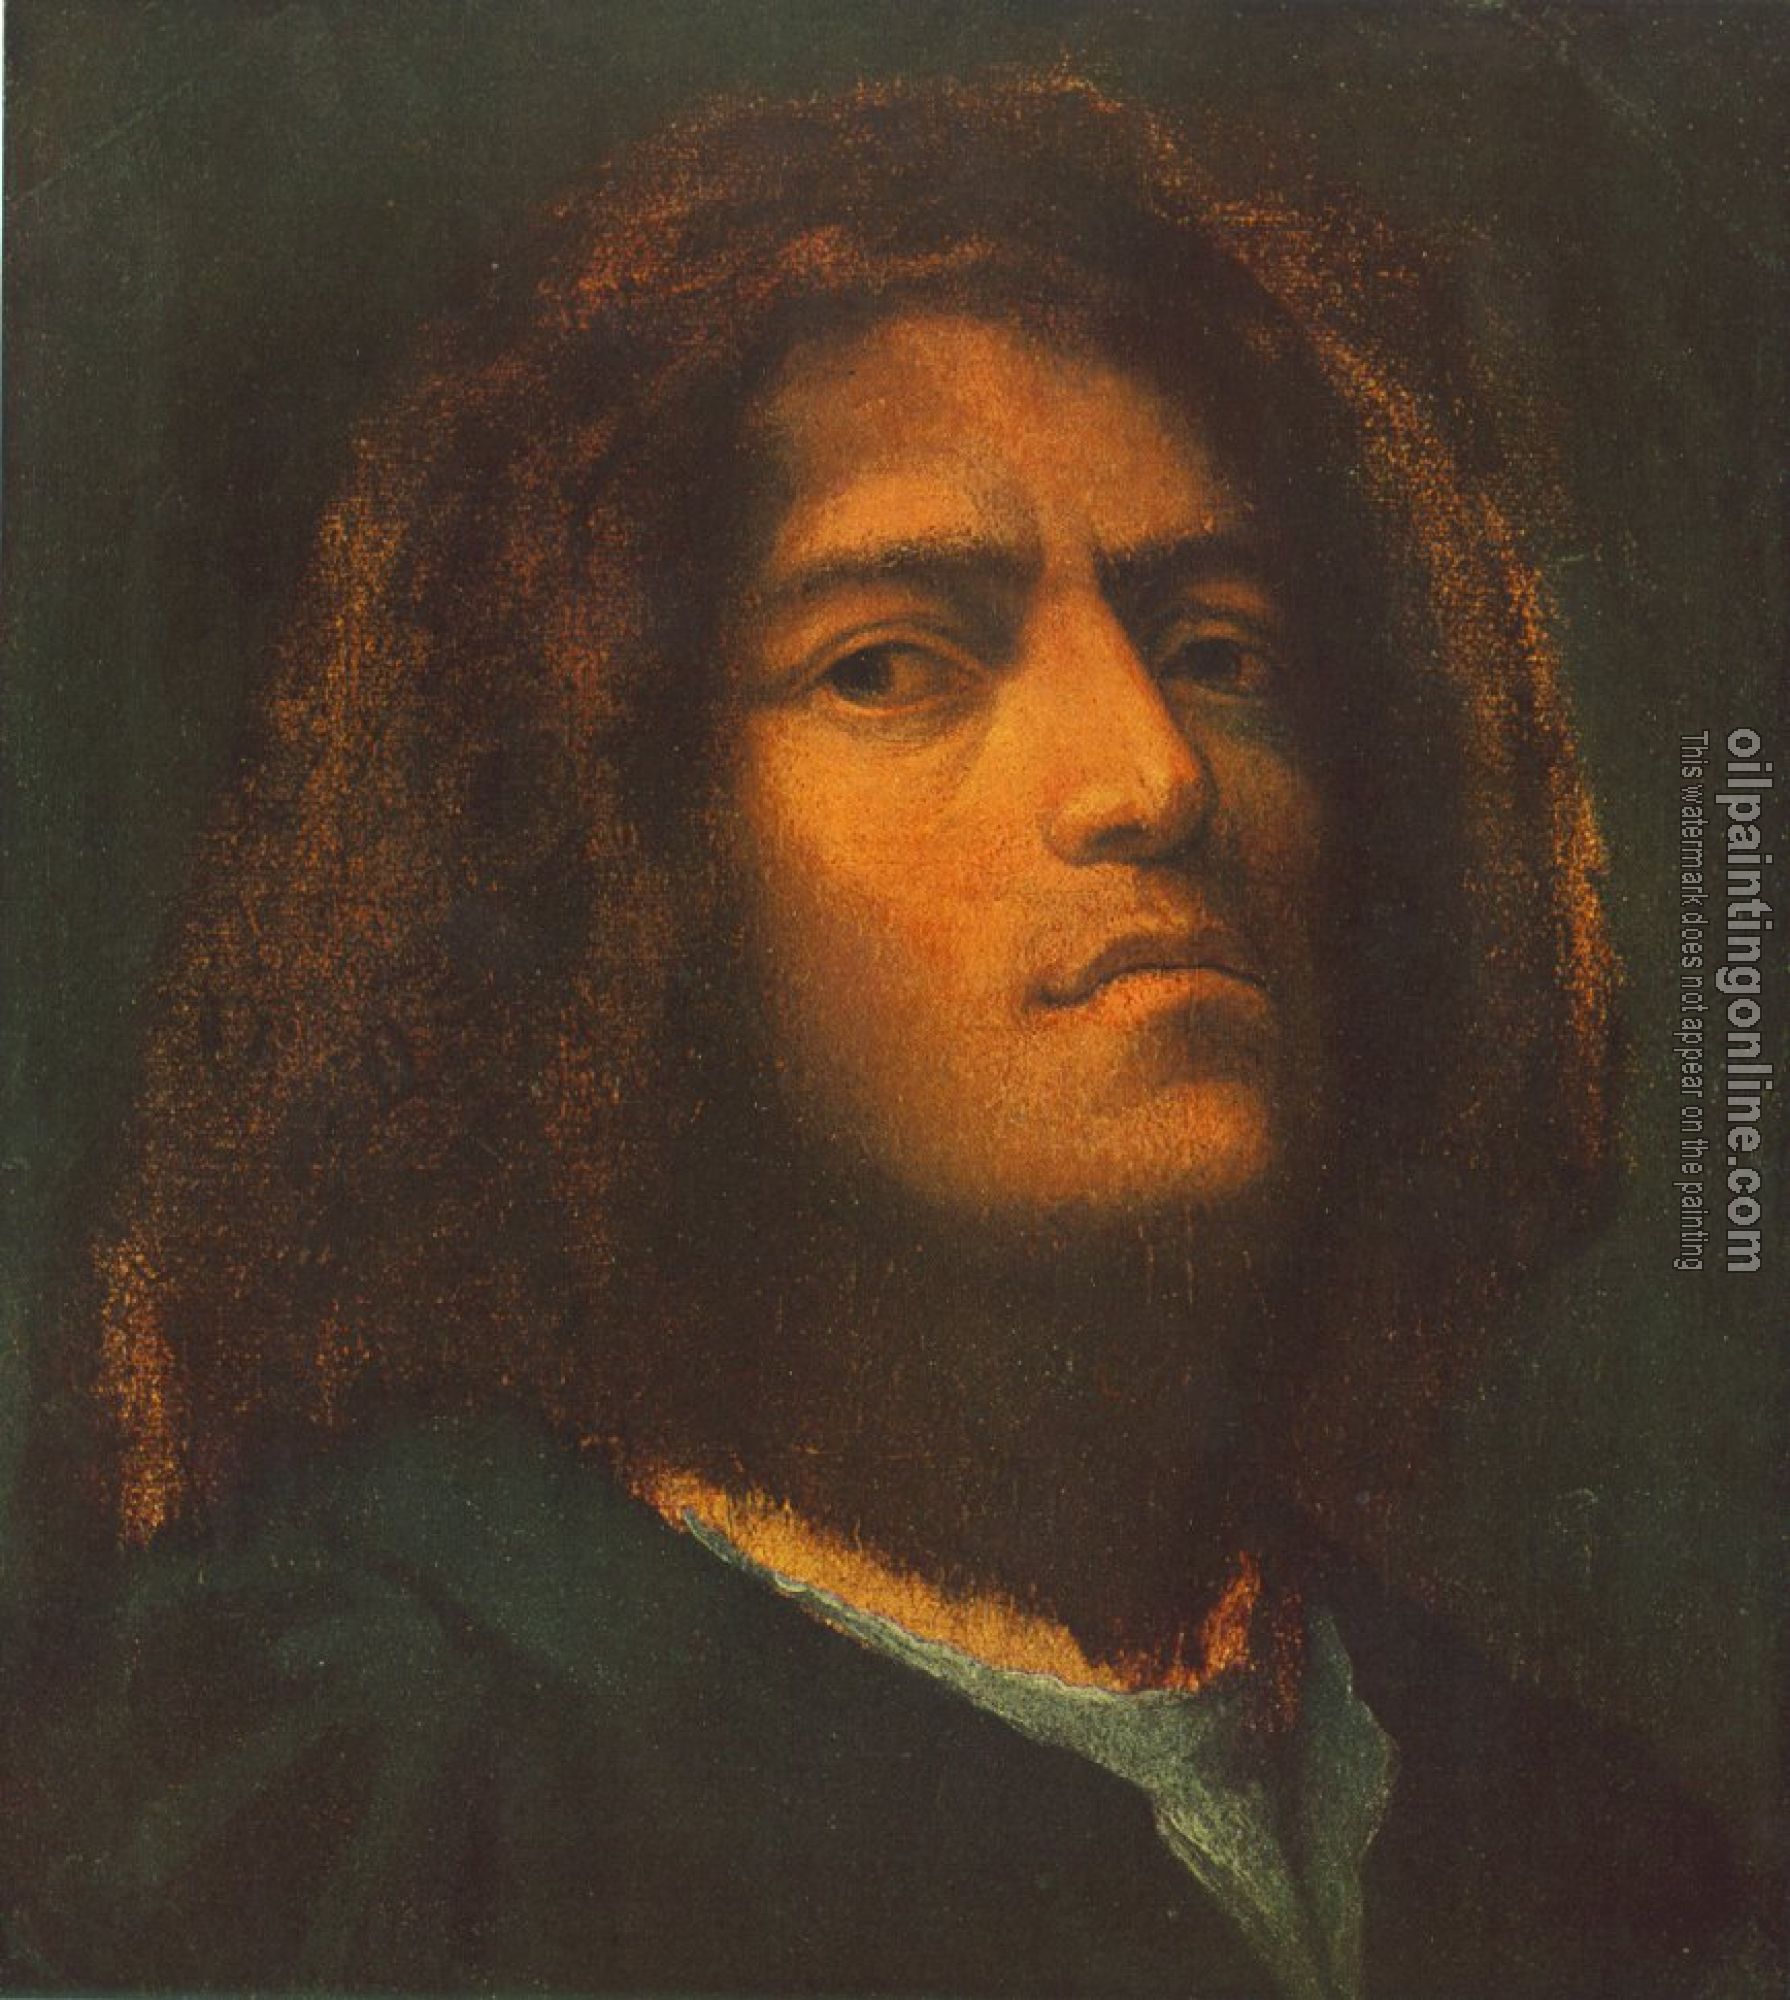 Giorgione - Self-Portrait